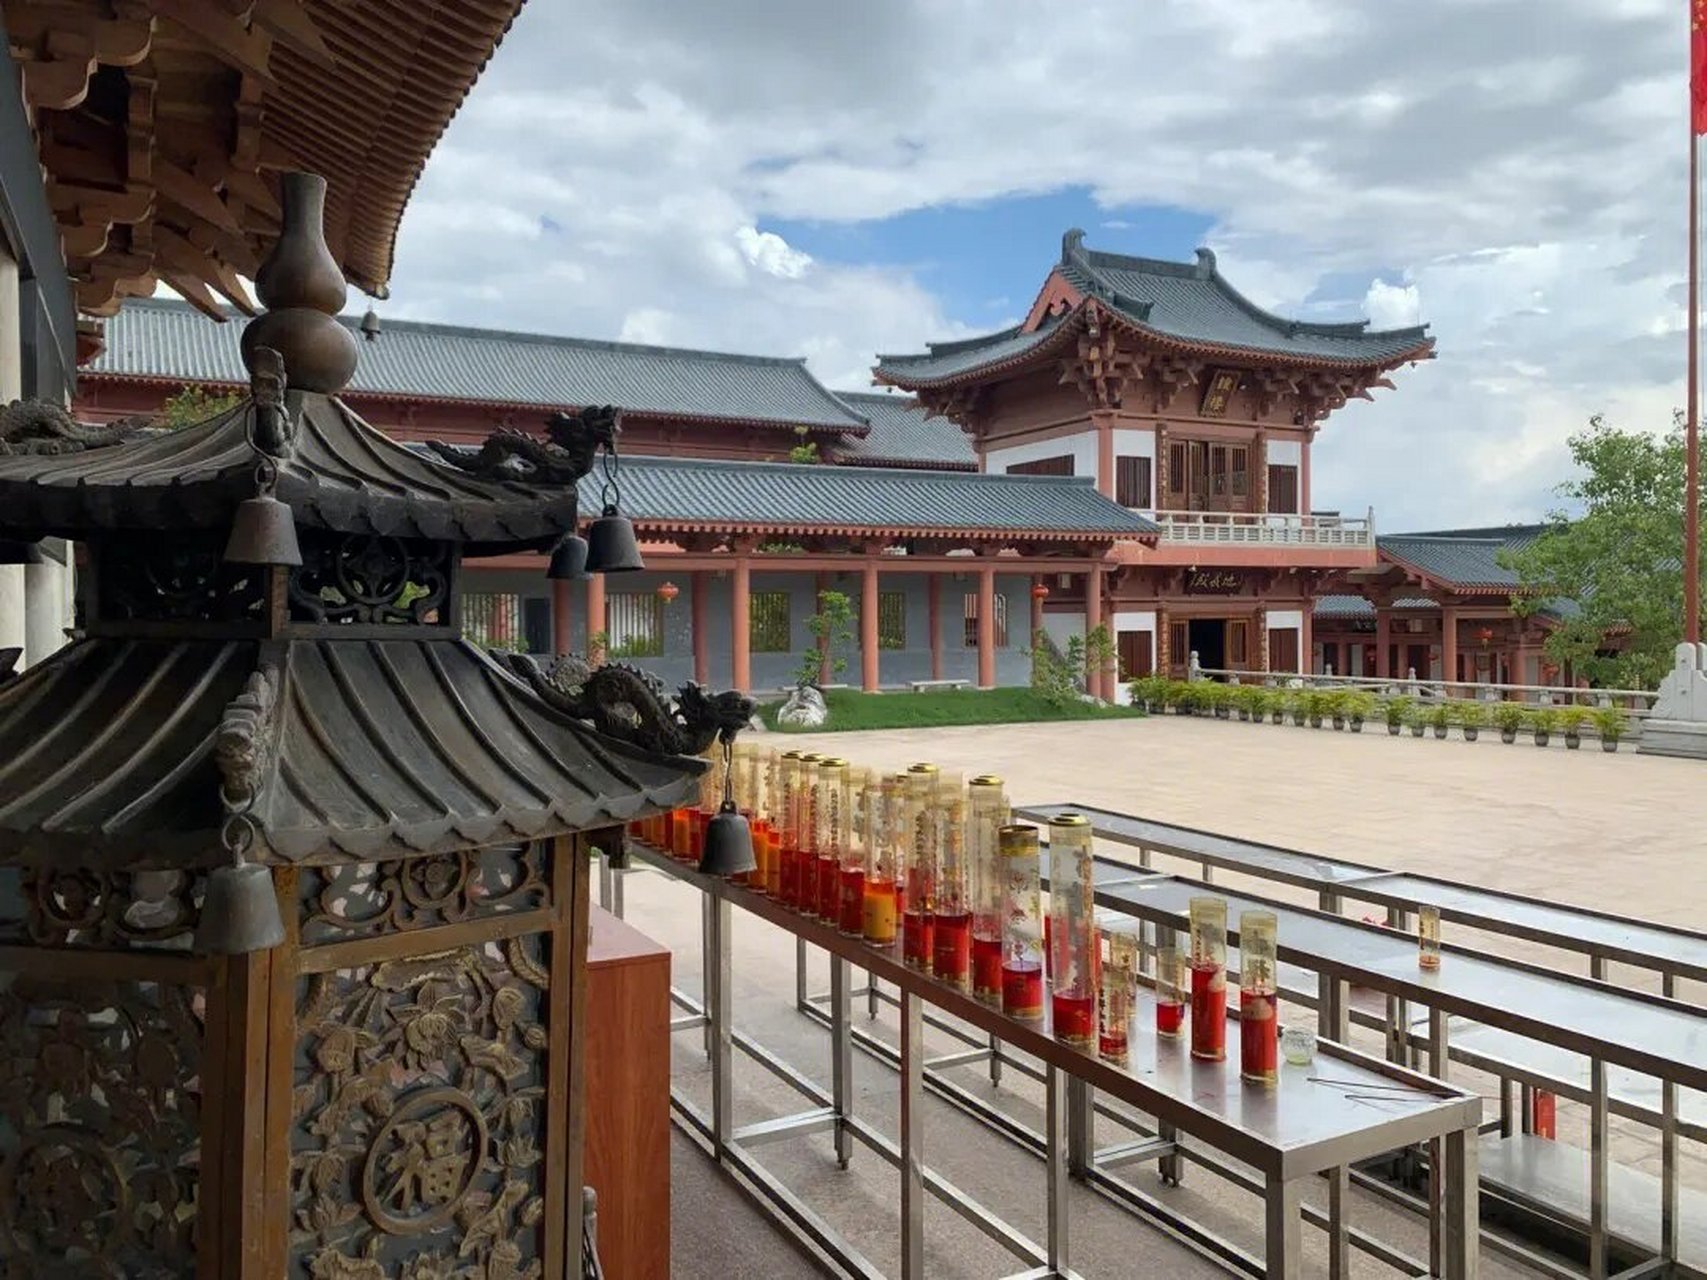 超越传说的佛教圣地:华严寺 广州花都华严寺,位于广州市花都区新华镇